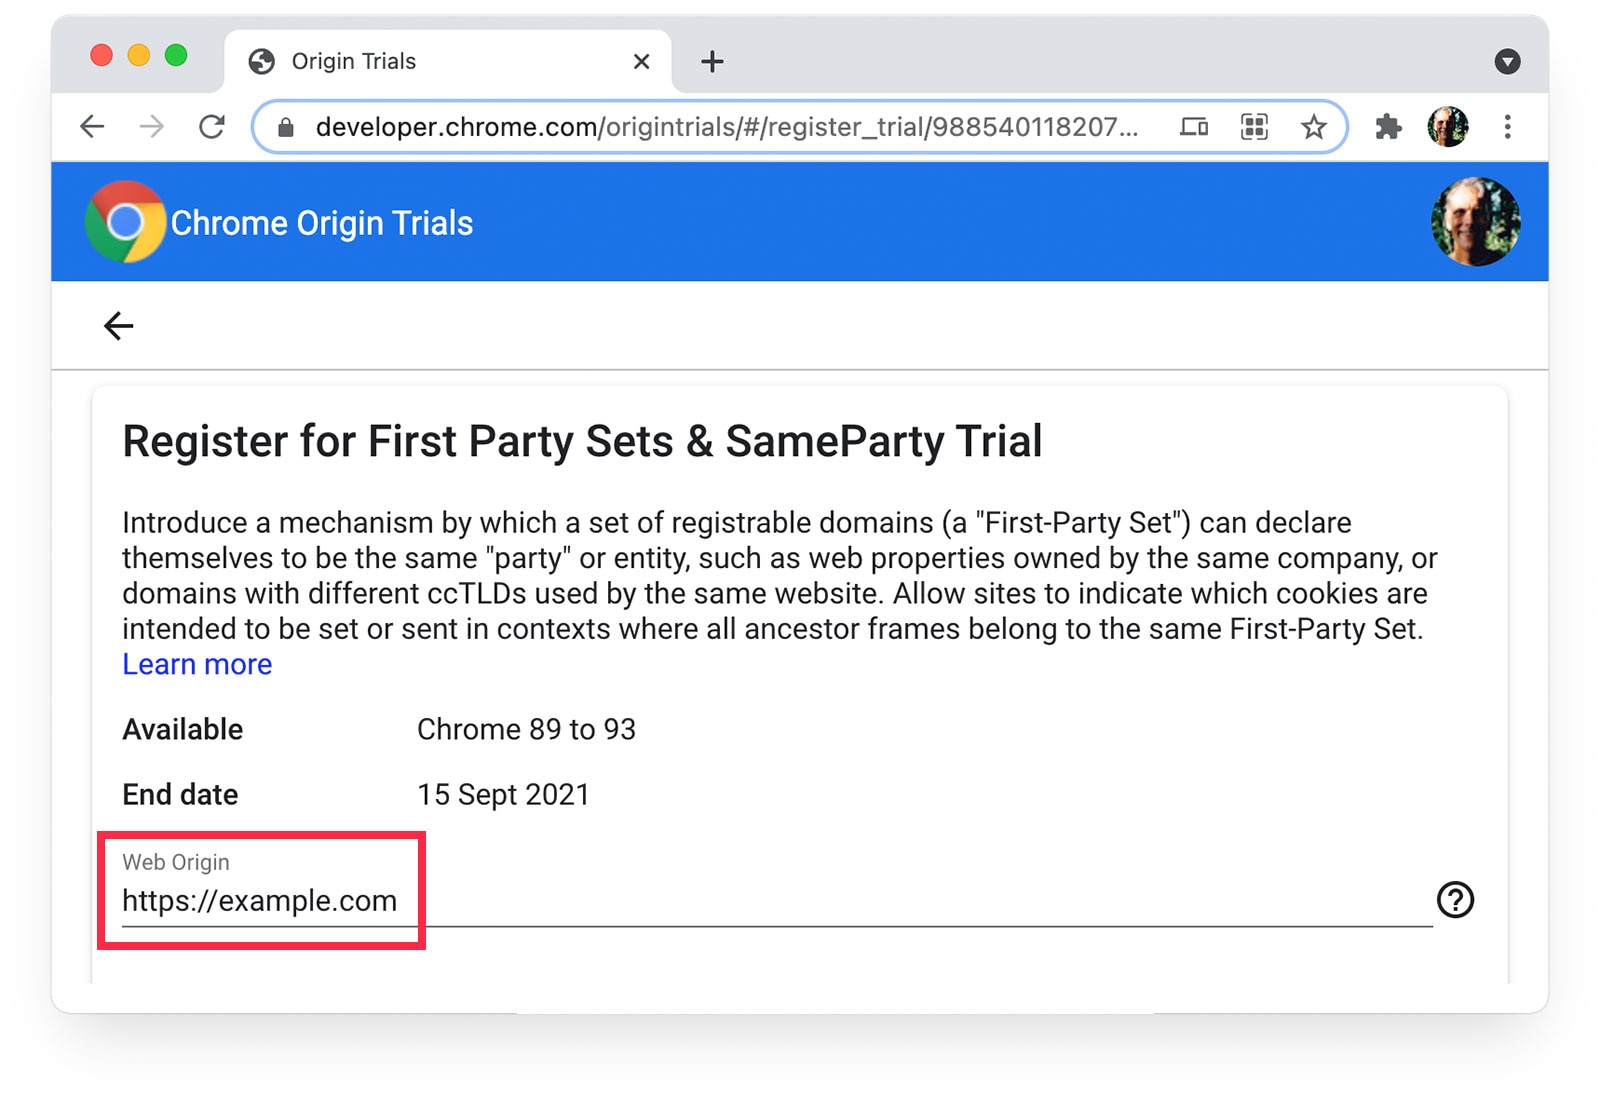 Halaman Uji Coba Origin Chrome
menampilkan https://example.com yang dipilih sebagai Asal Web.